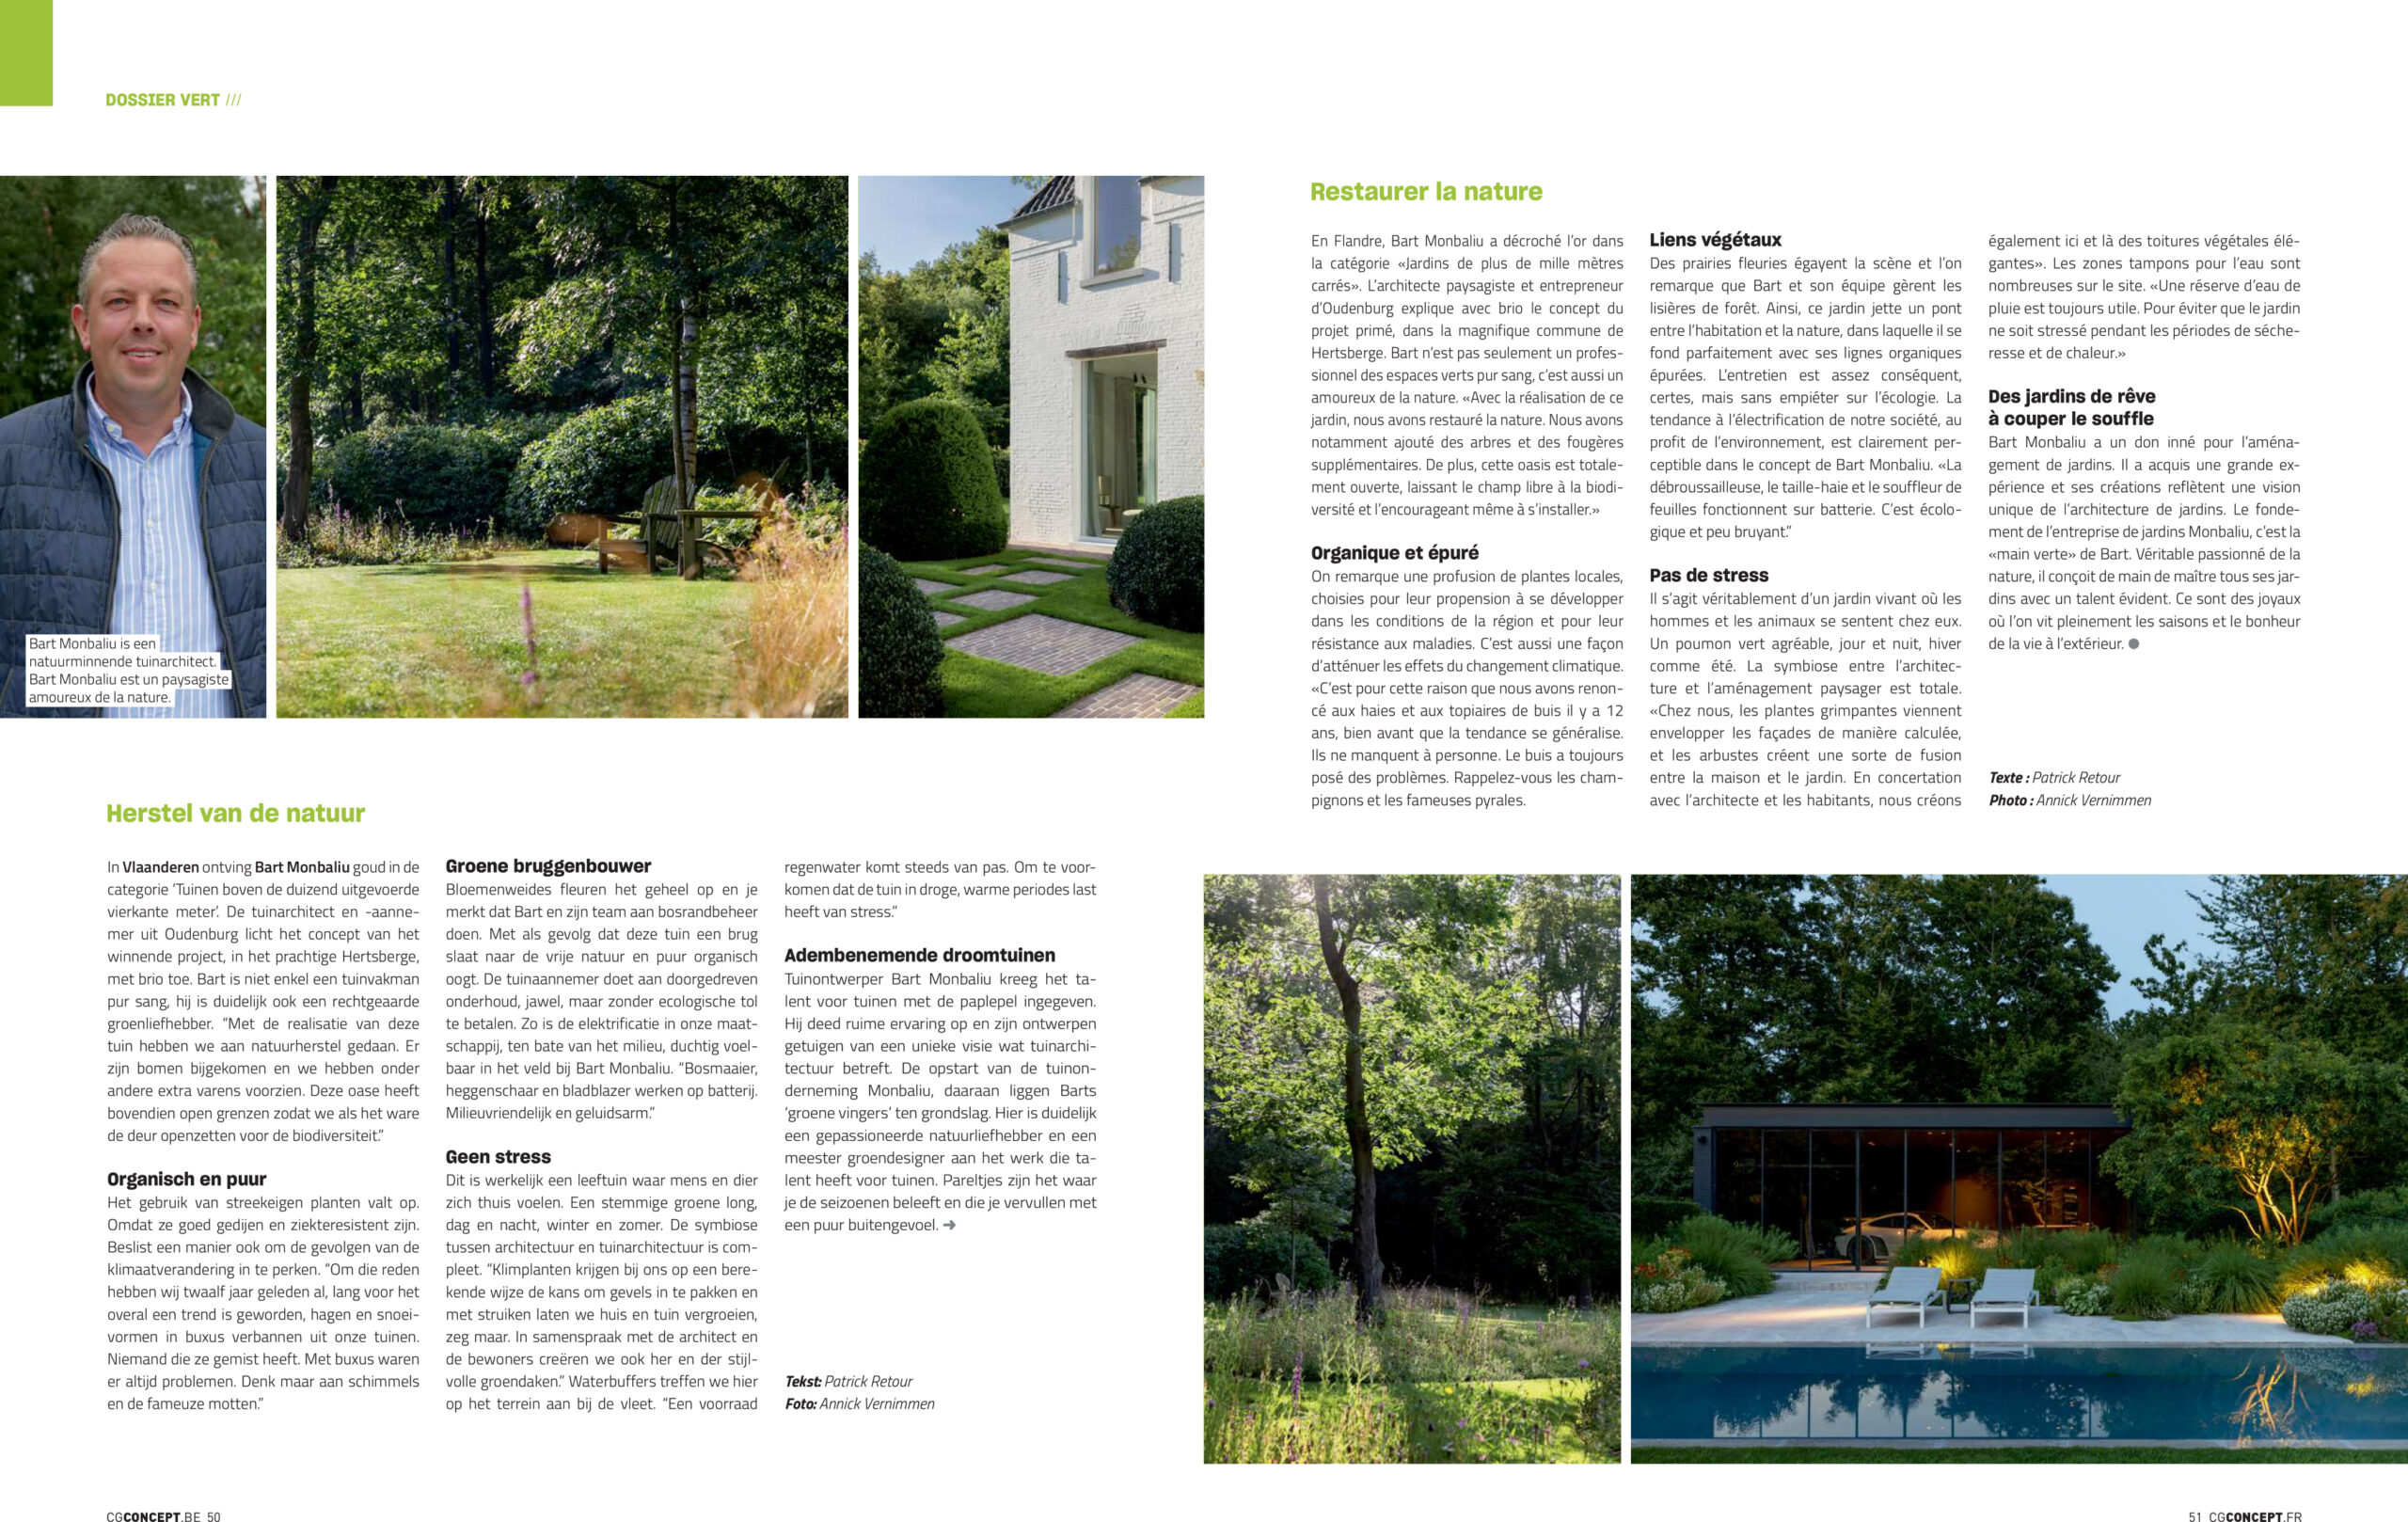 Afbeelding nieuwsitem Het tijdschrift Chic Gardens licht het winnend project VTA ’23 toe.